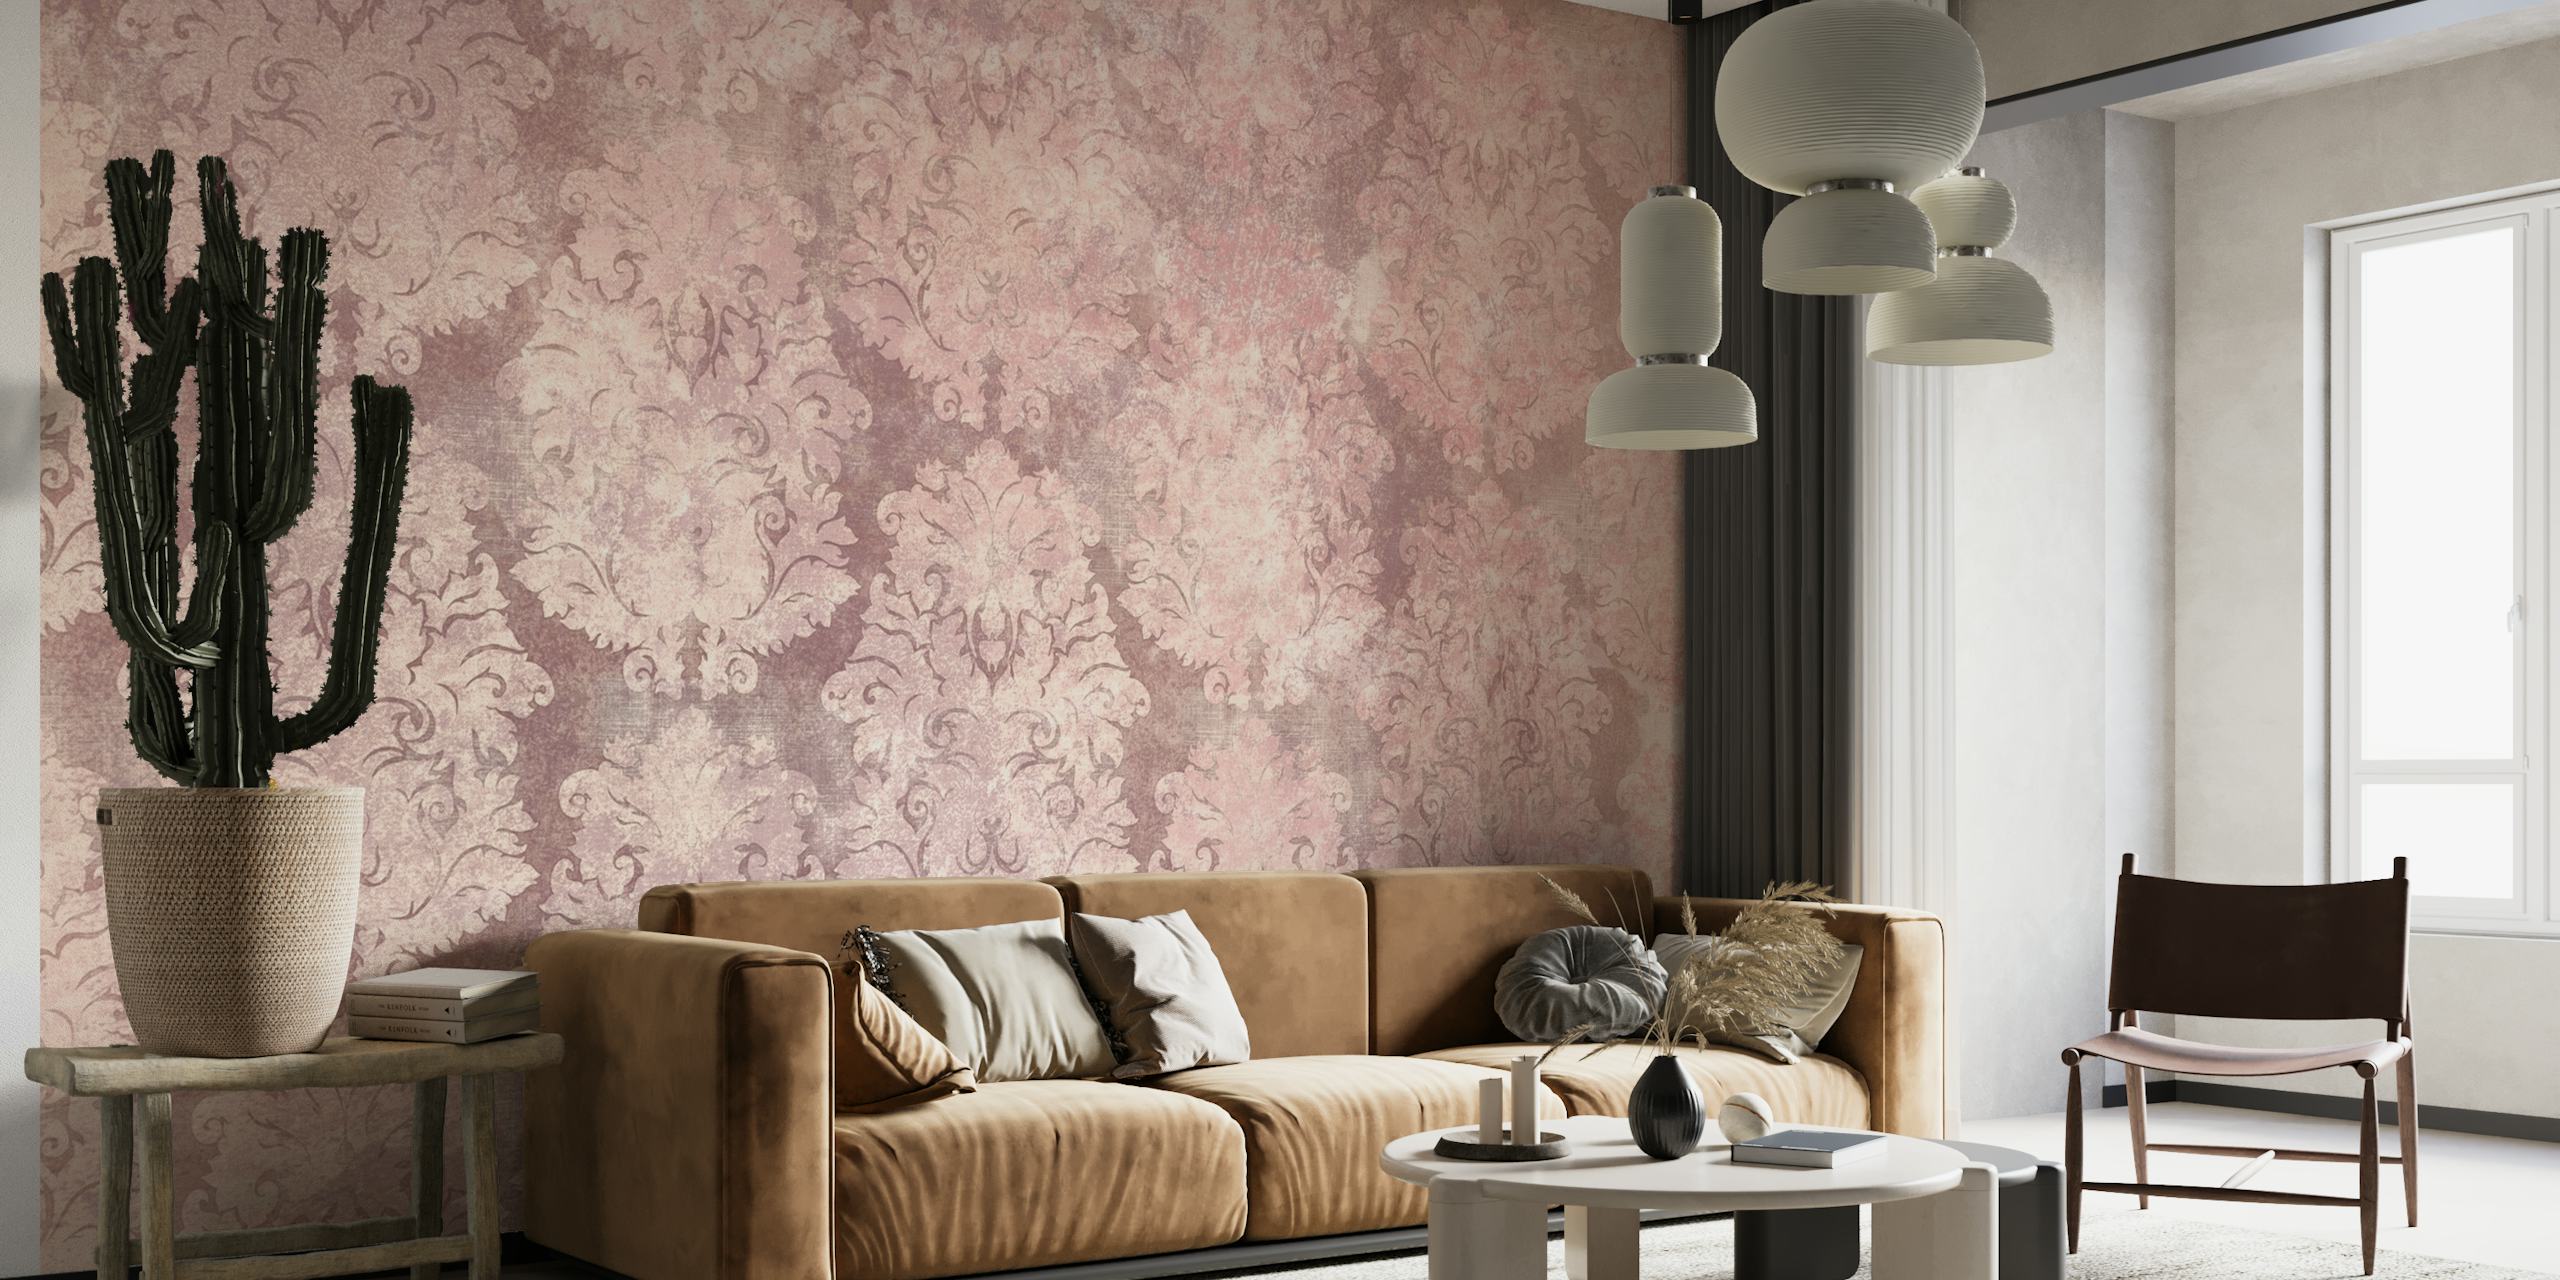 Papier peint gracieux à motif damassé rose poudré ajoutant un charme vintage aux intérieurs